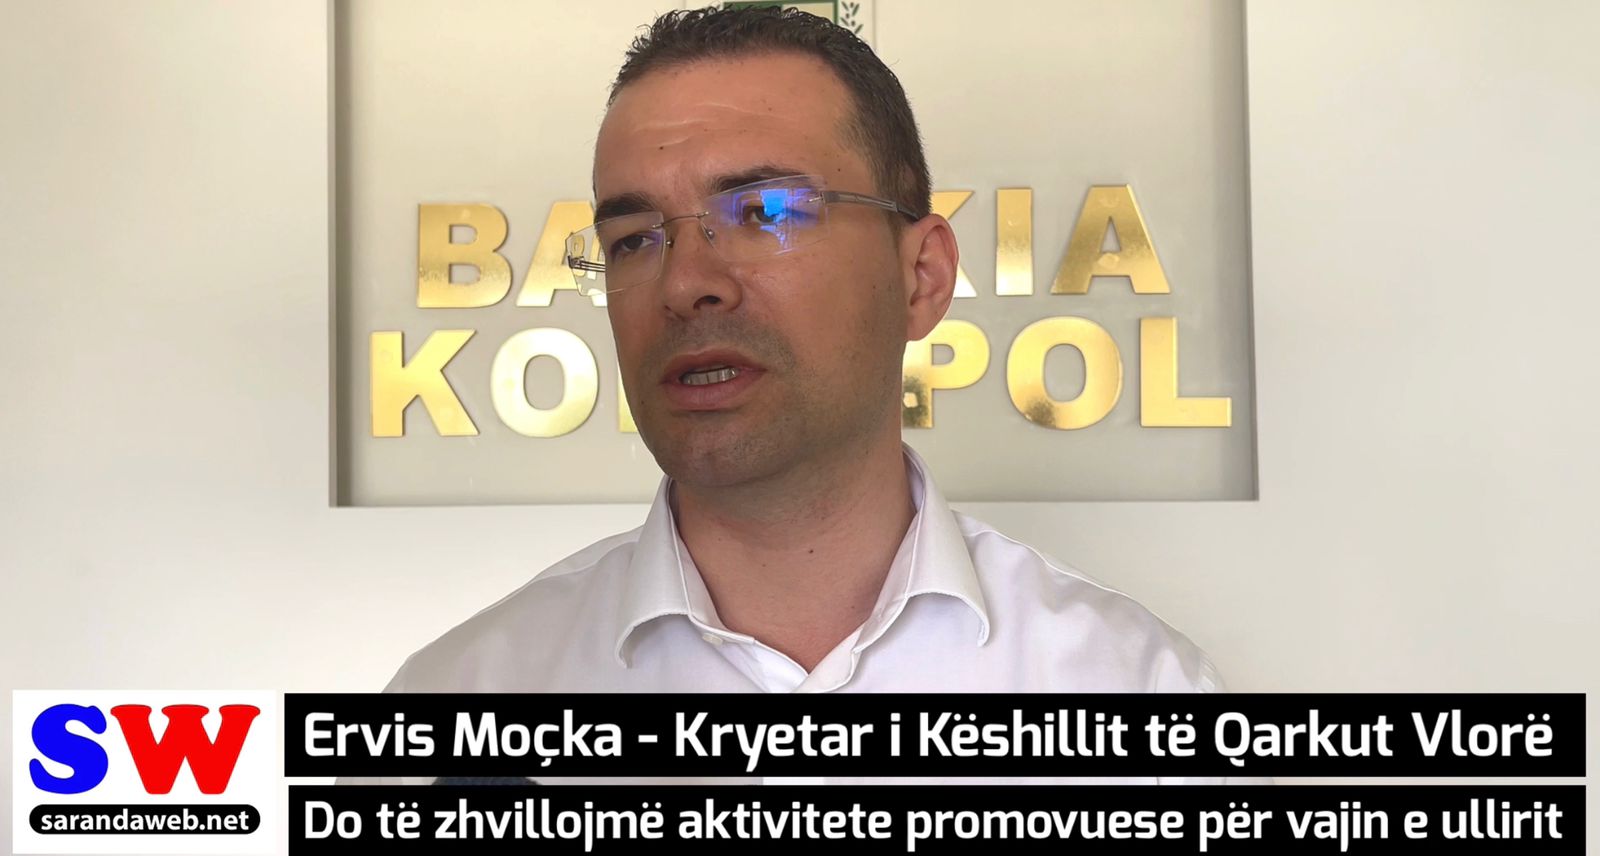 Ervis Moçka: Do të zhvillojmë aktivitete promovuese për vajin e ullirit